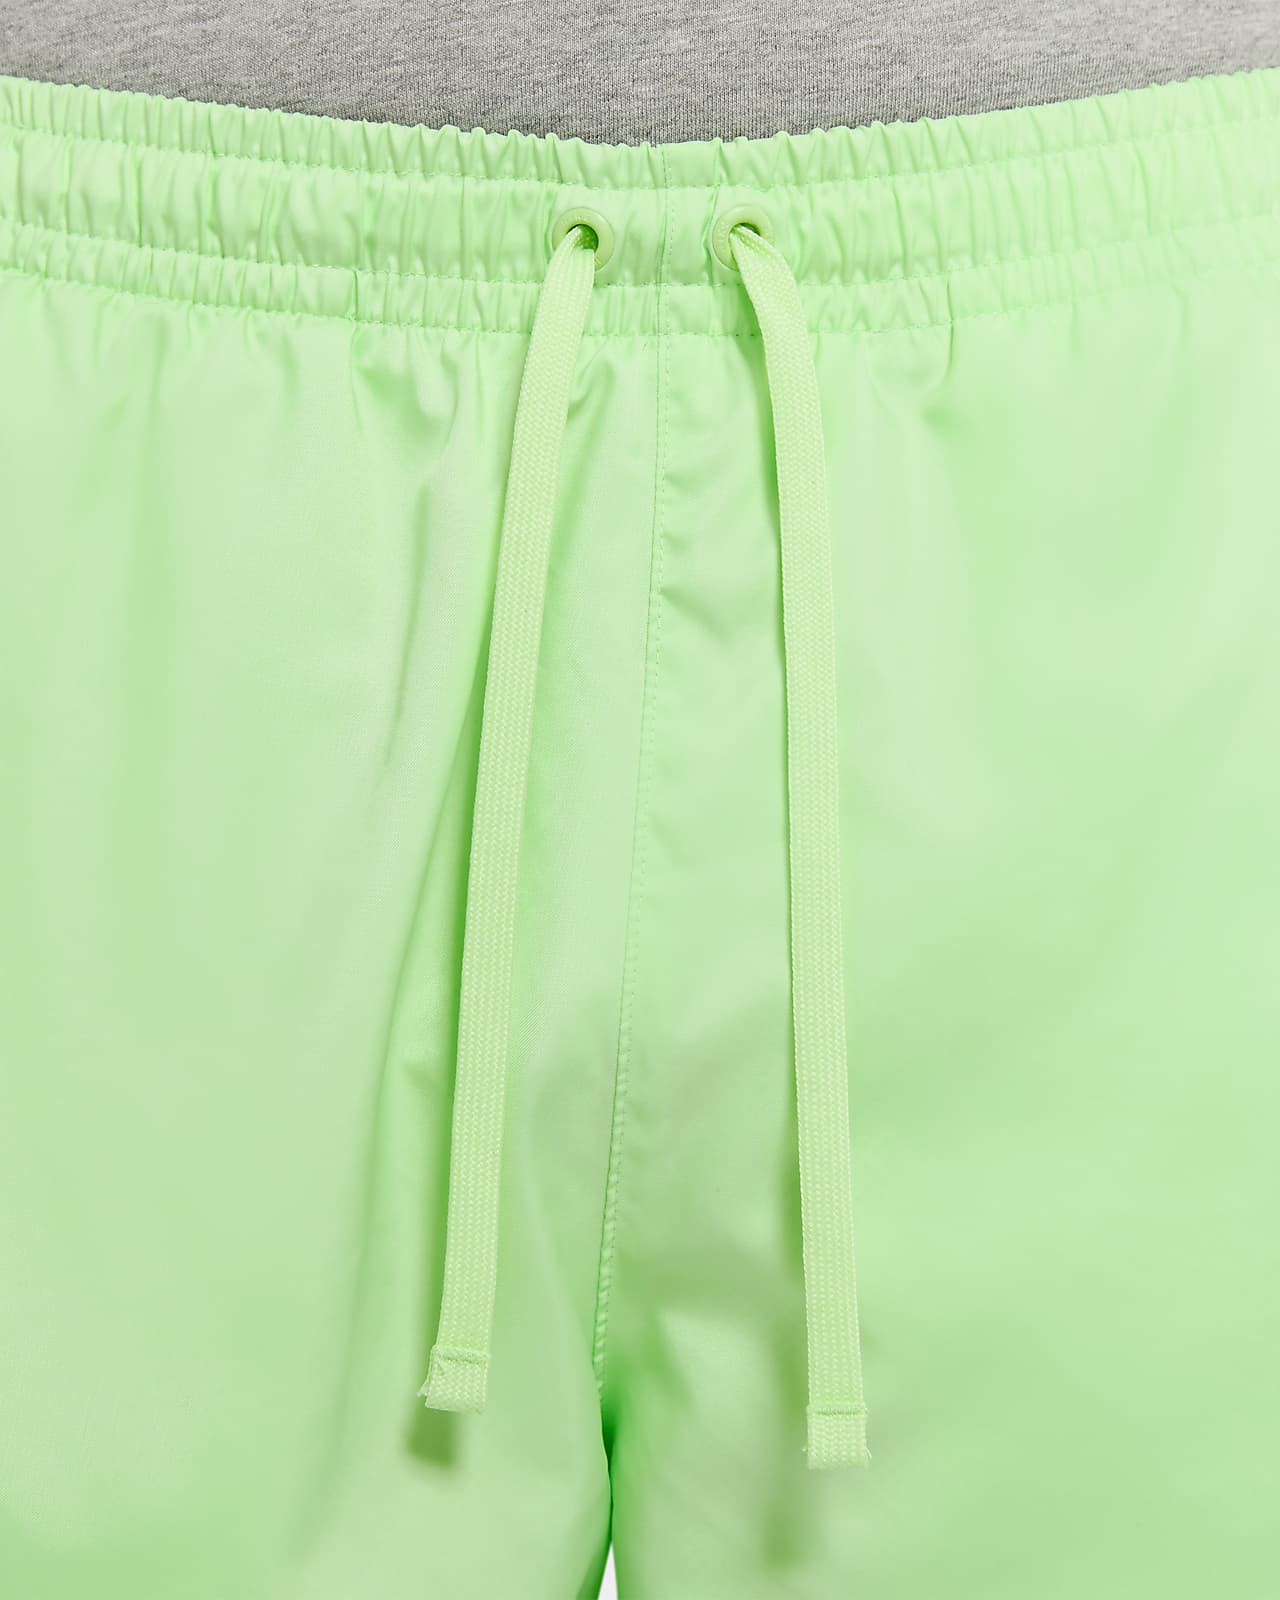 green nike woven shorts